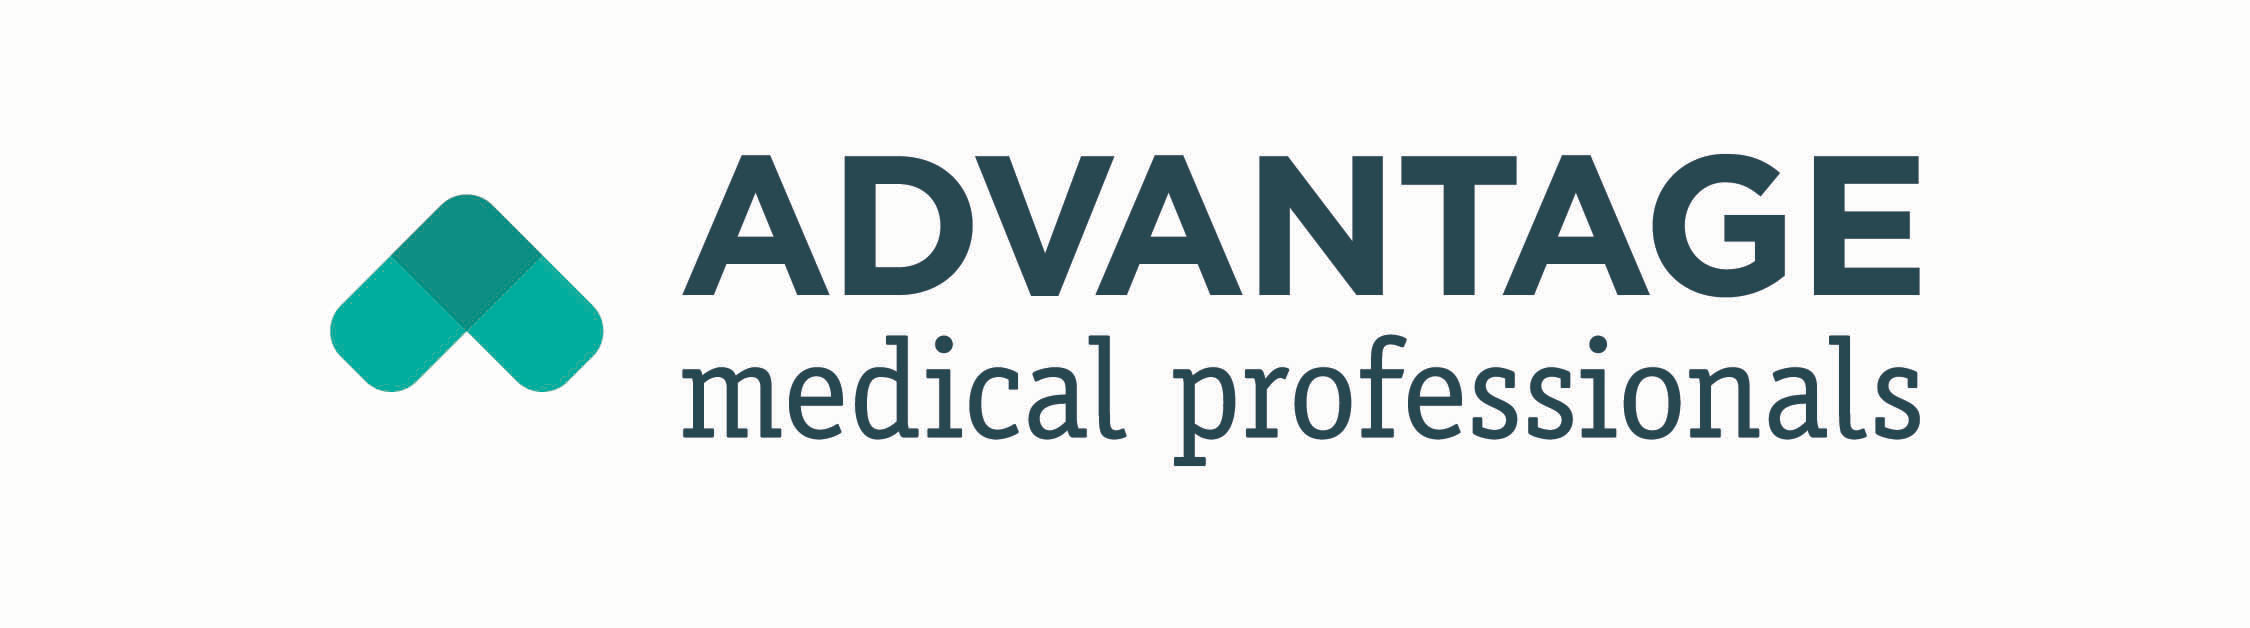 Advantage Medical Professionals Company Logo